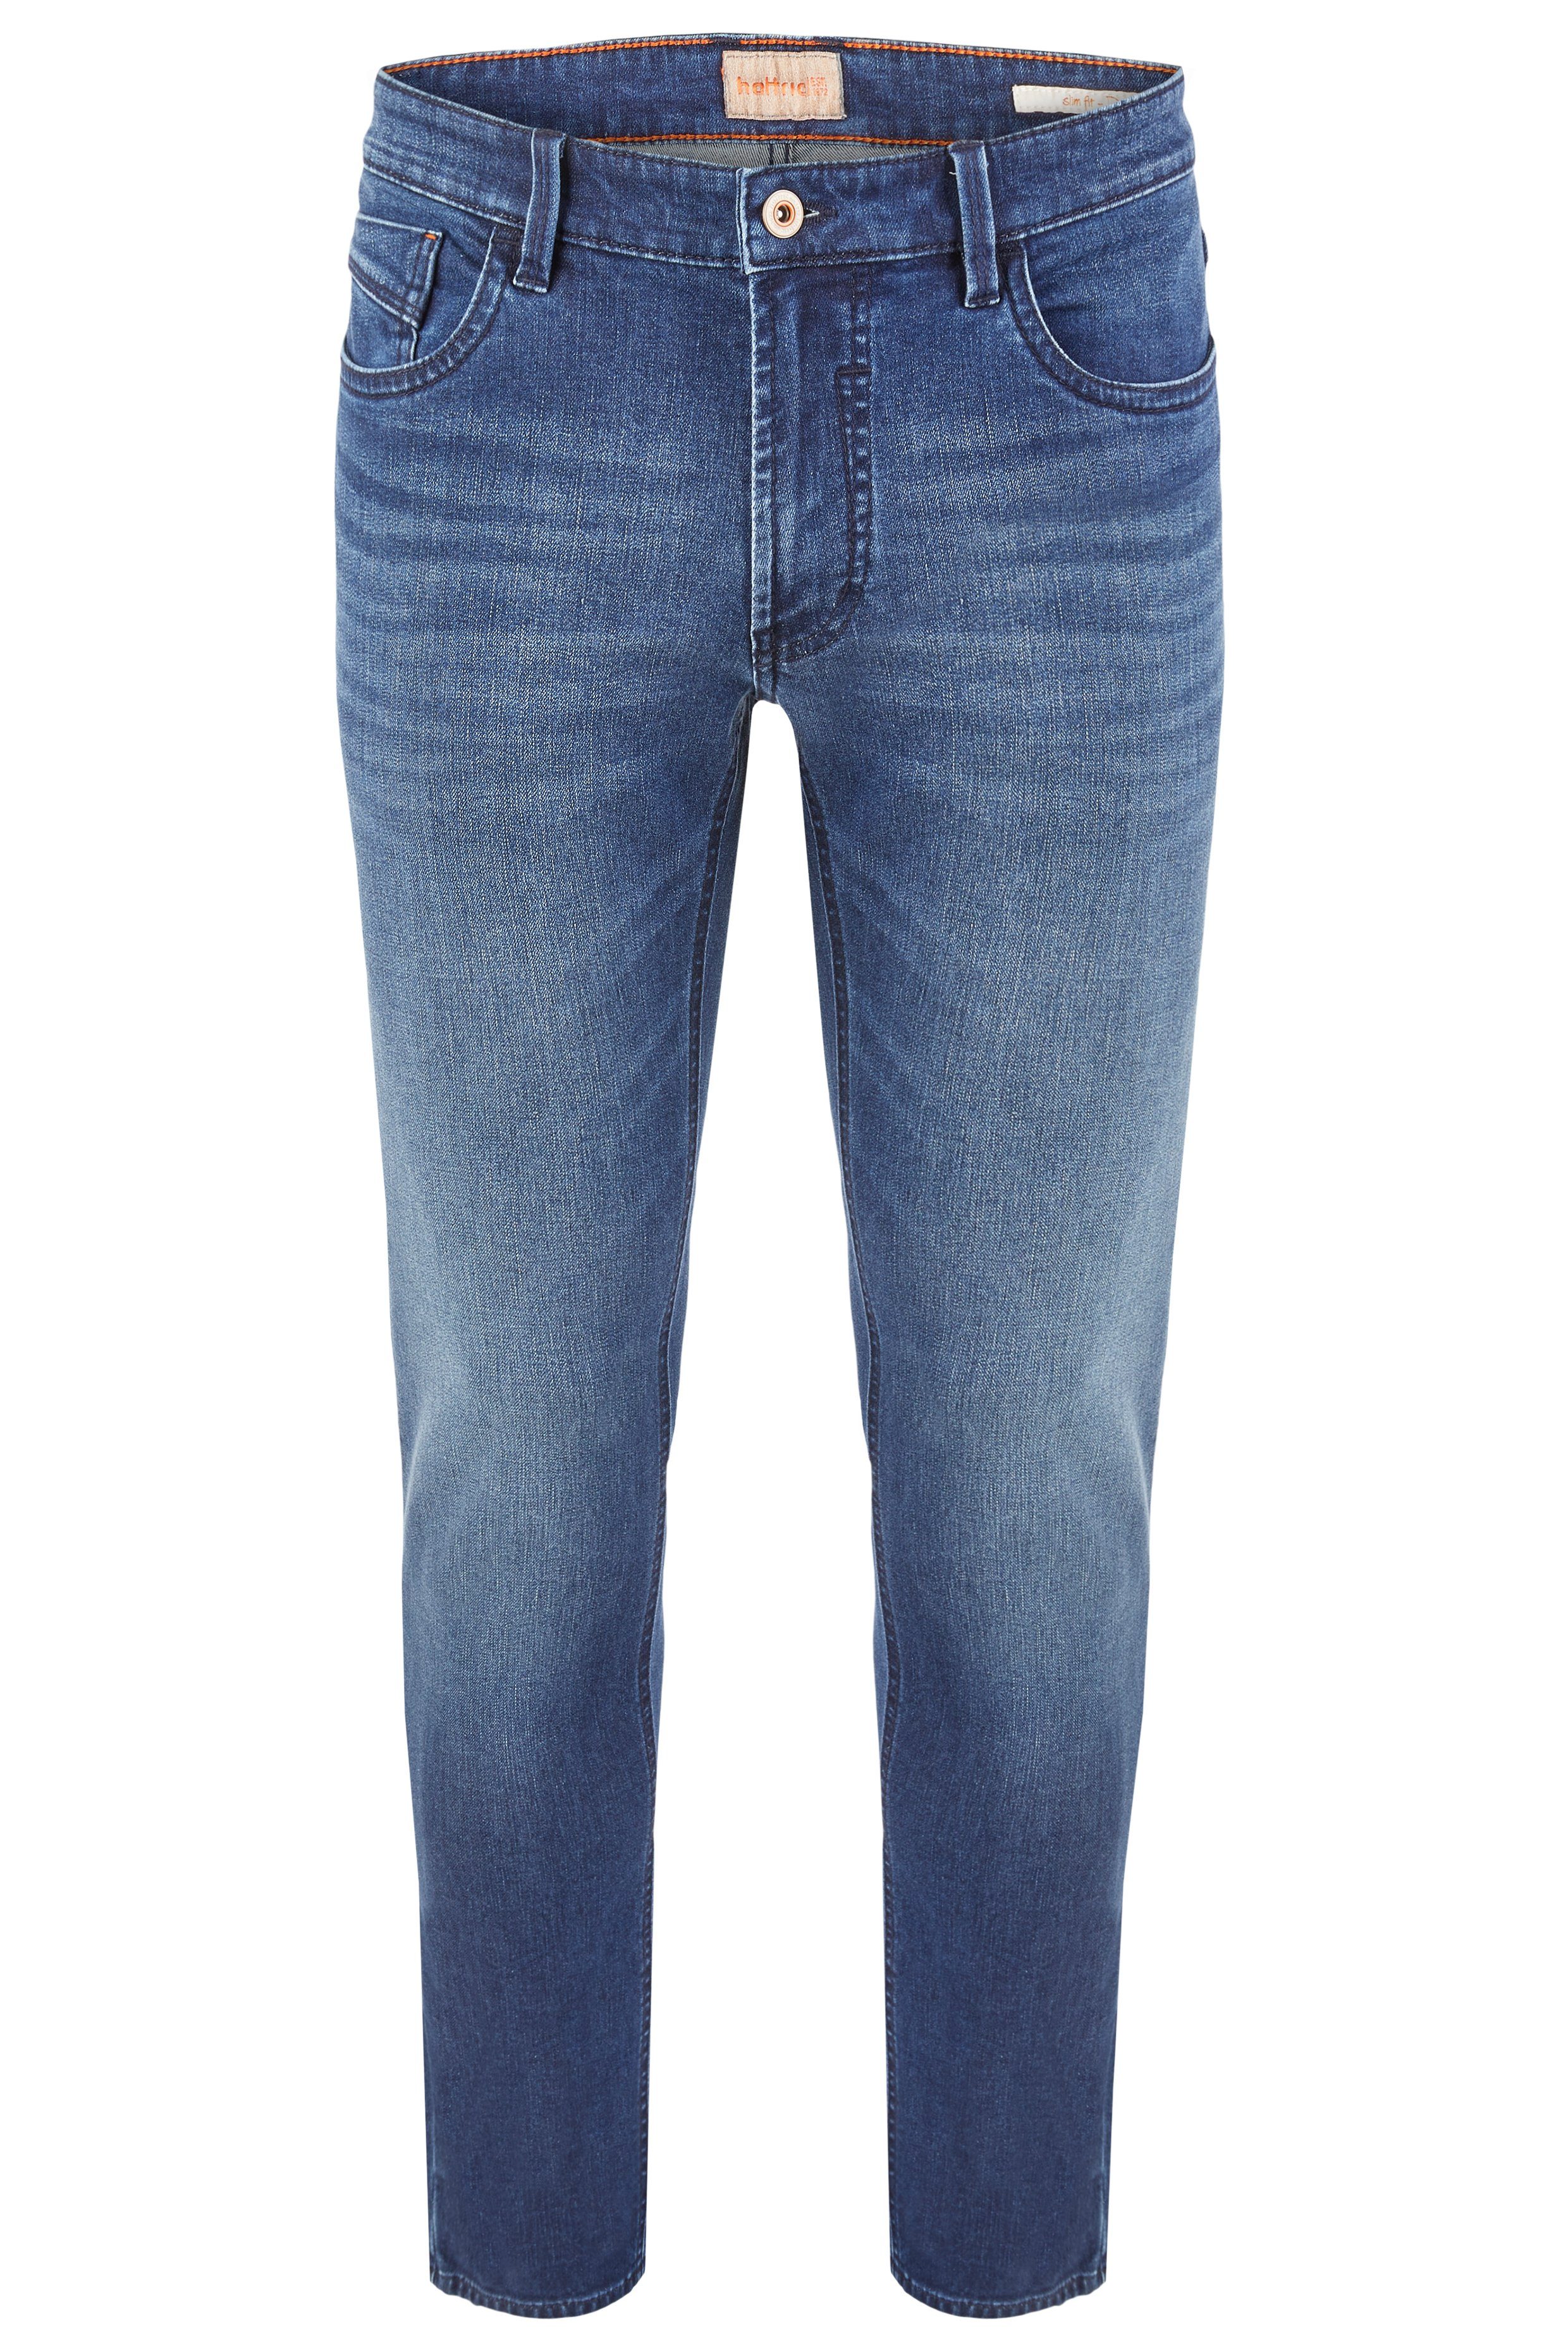 Hattric 5-Pocket-Jeans HATTRIC DAVIS rinsed dark blue 688585 9348.45